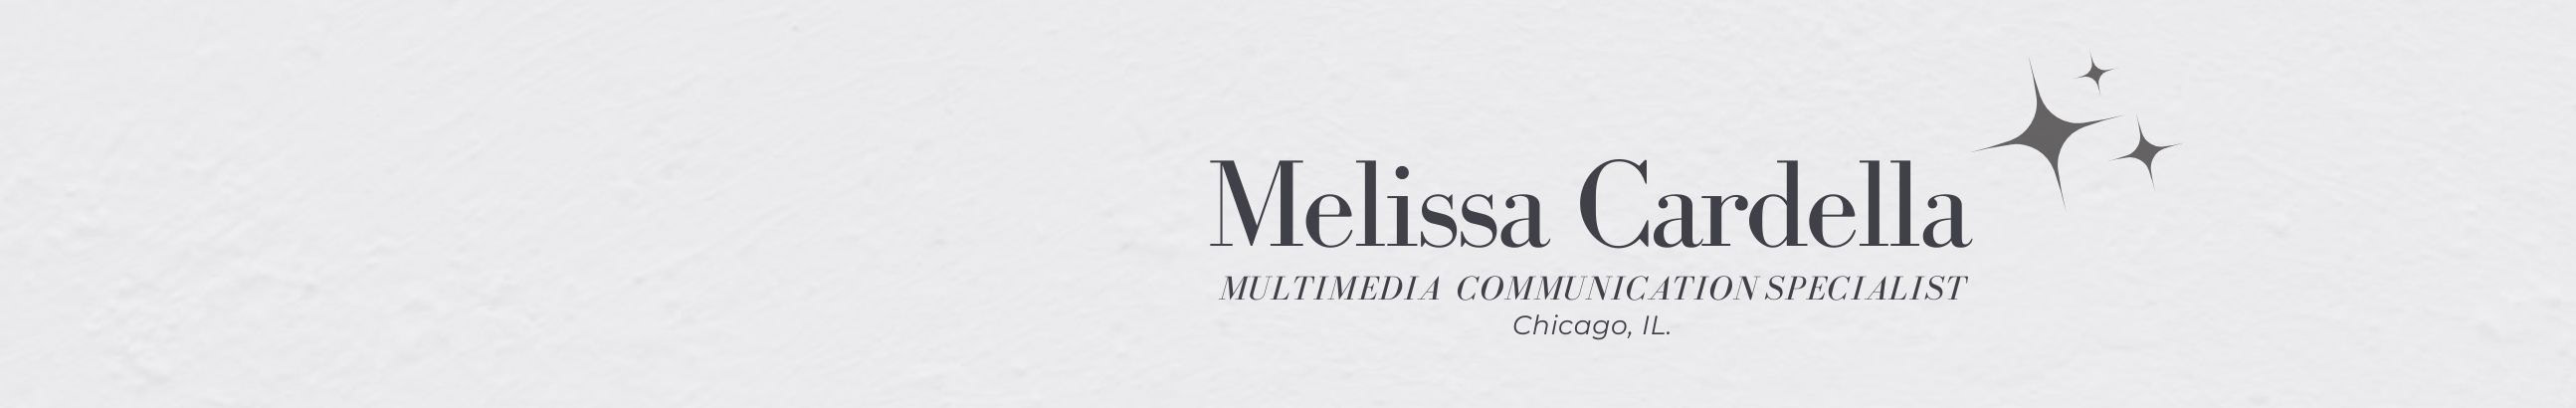 Melissa Cardella's profile banner